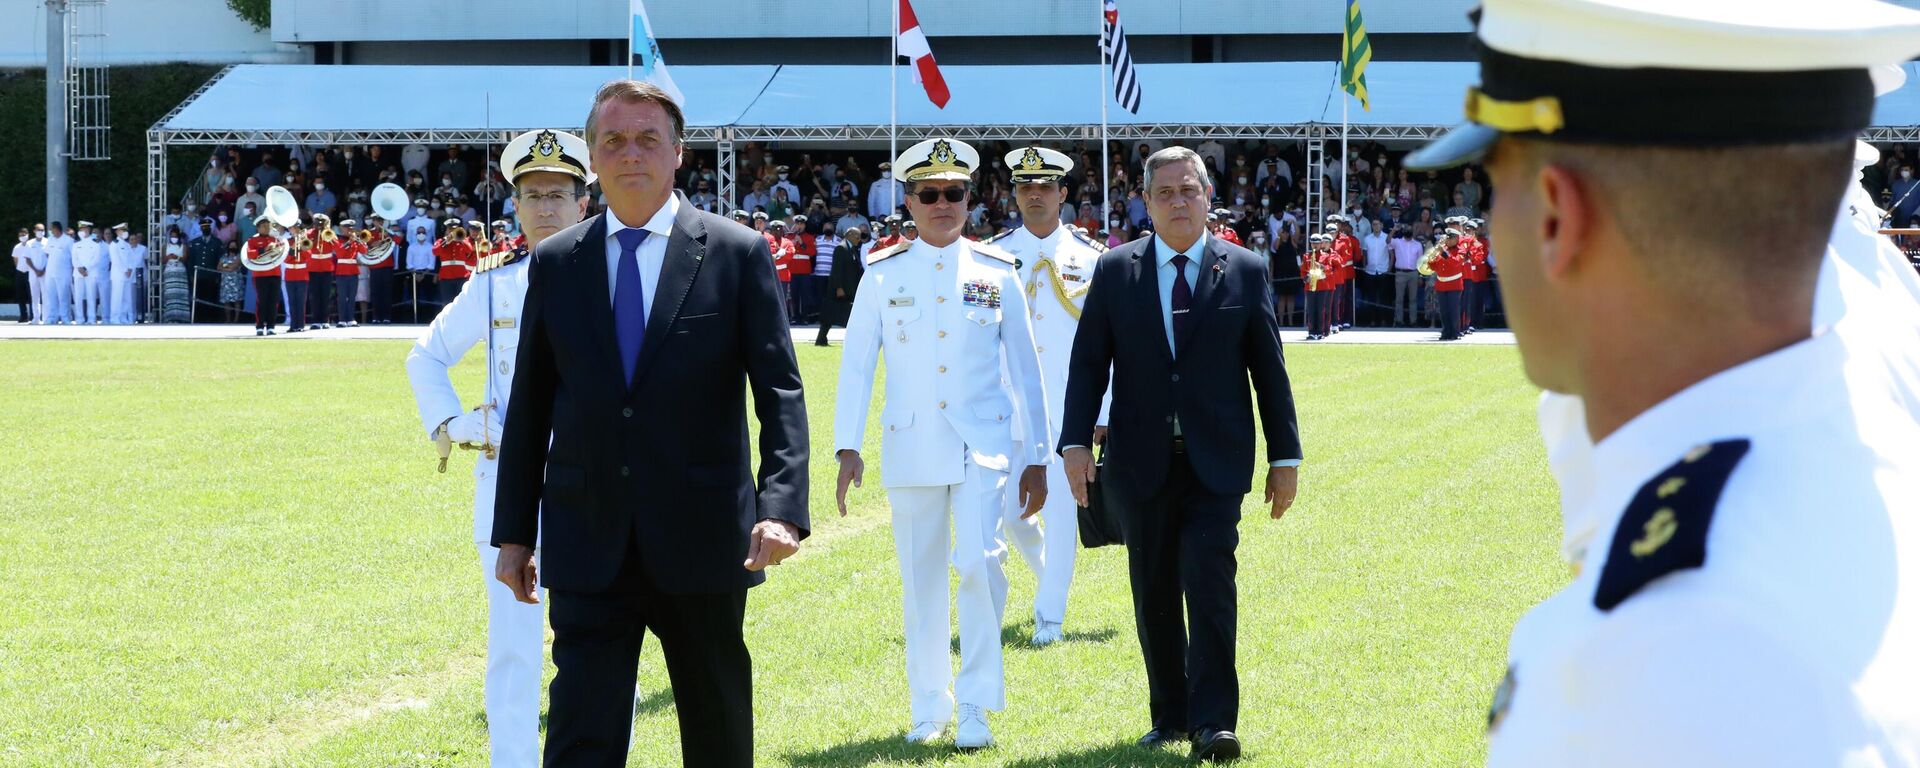 O presidente Jair Bolsonaro (à frente) na Cerimônia de Declaração de Guardas-Marinha (foto de arquivo) - Sputnik Brasil, 1920, 19.08.2022